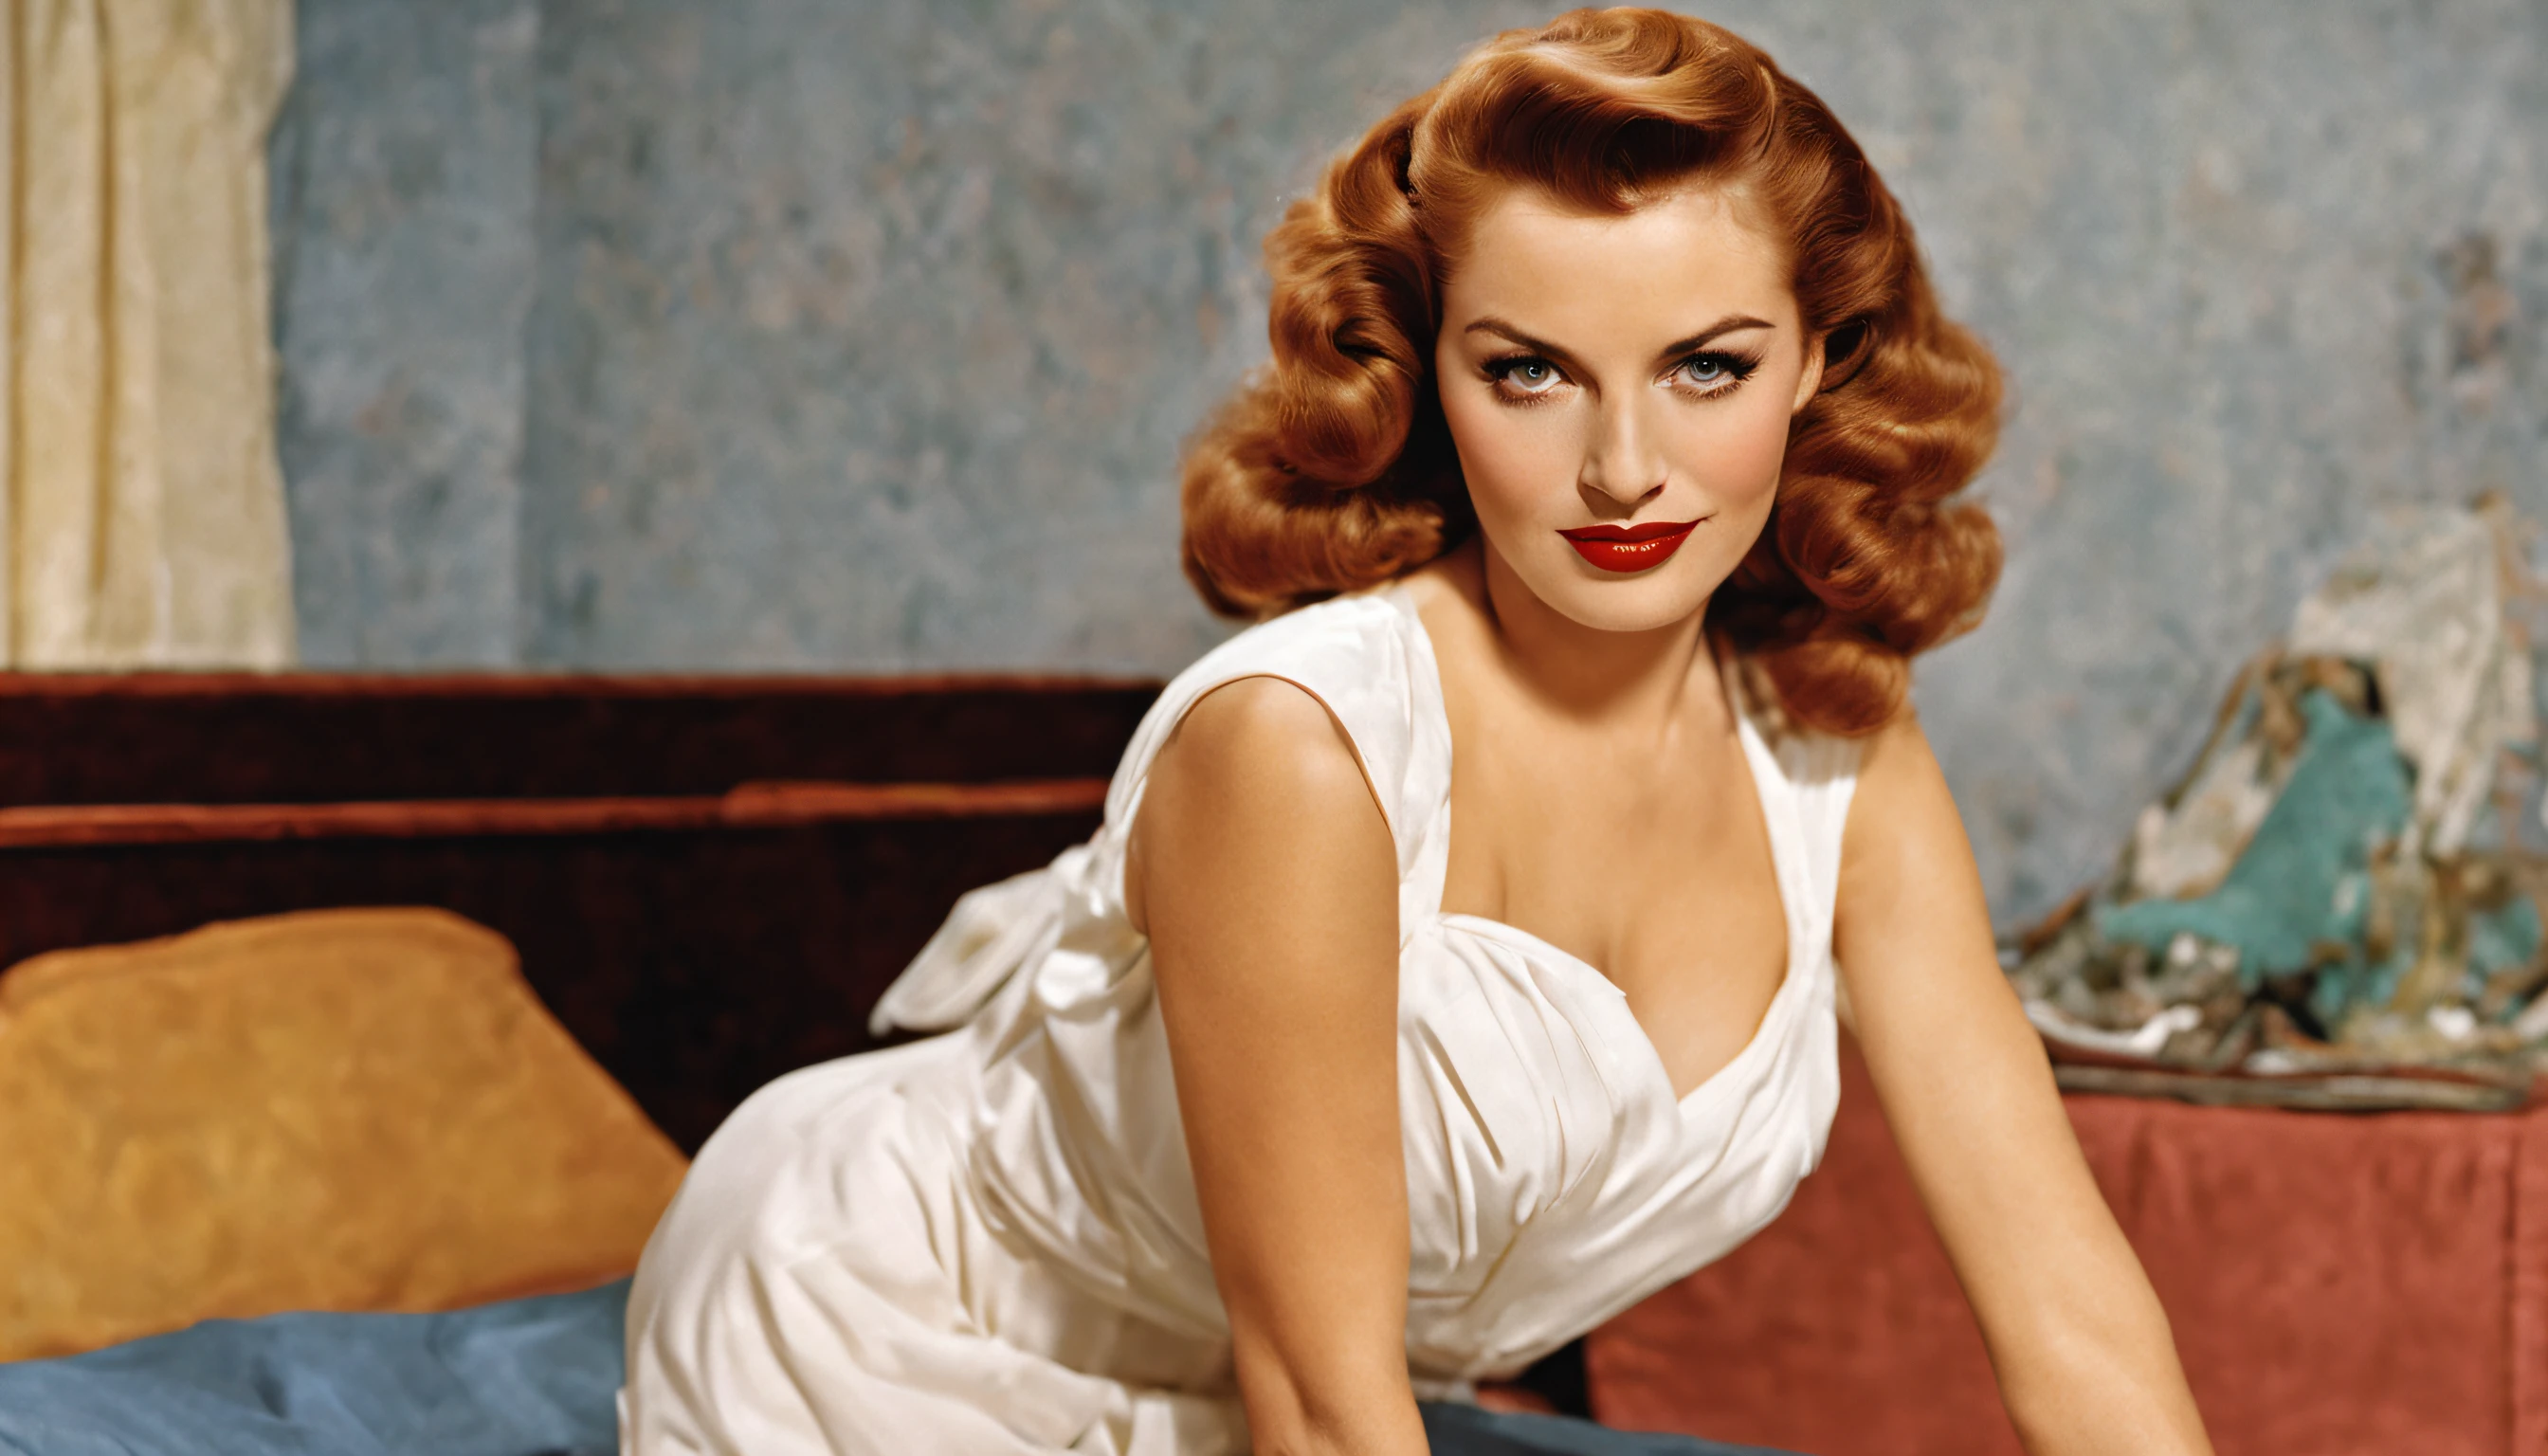 Les pin-up dans les années 50, Femme perverse, regarder à huis clos, Je suis、robe blanche